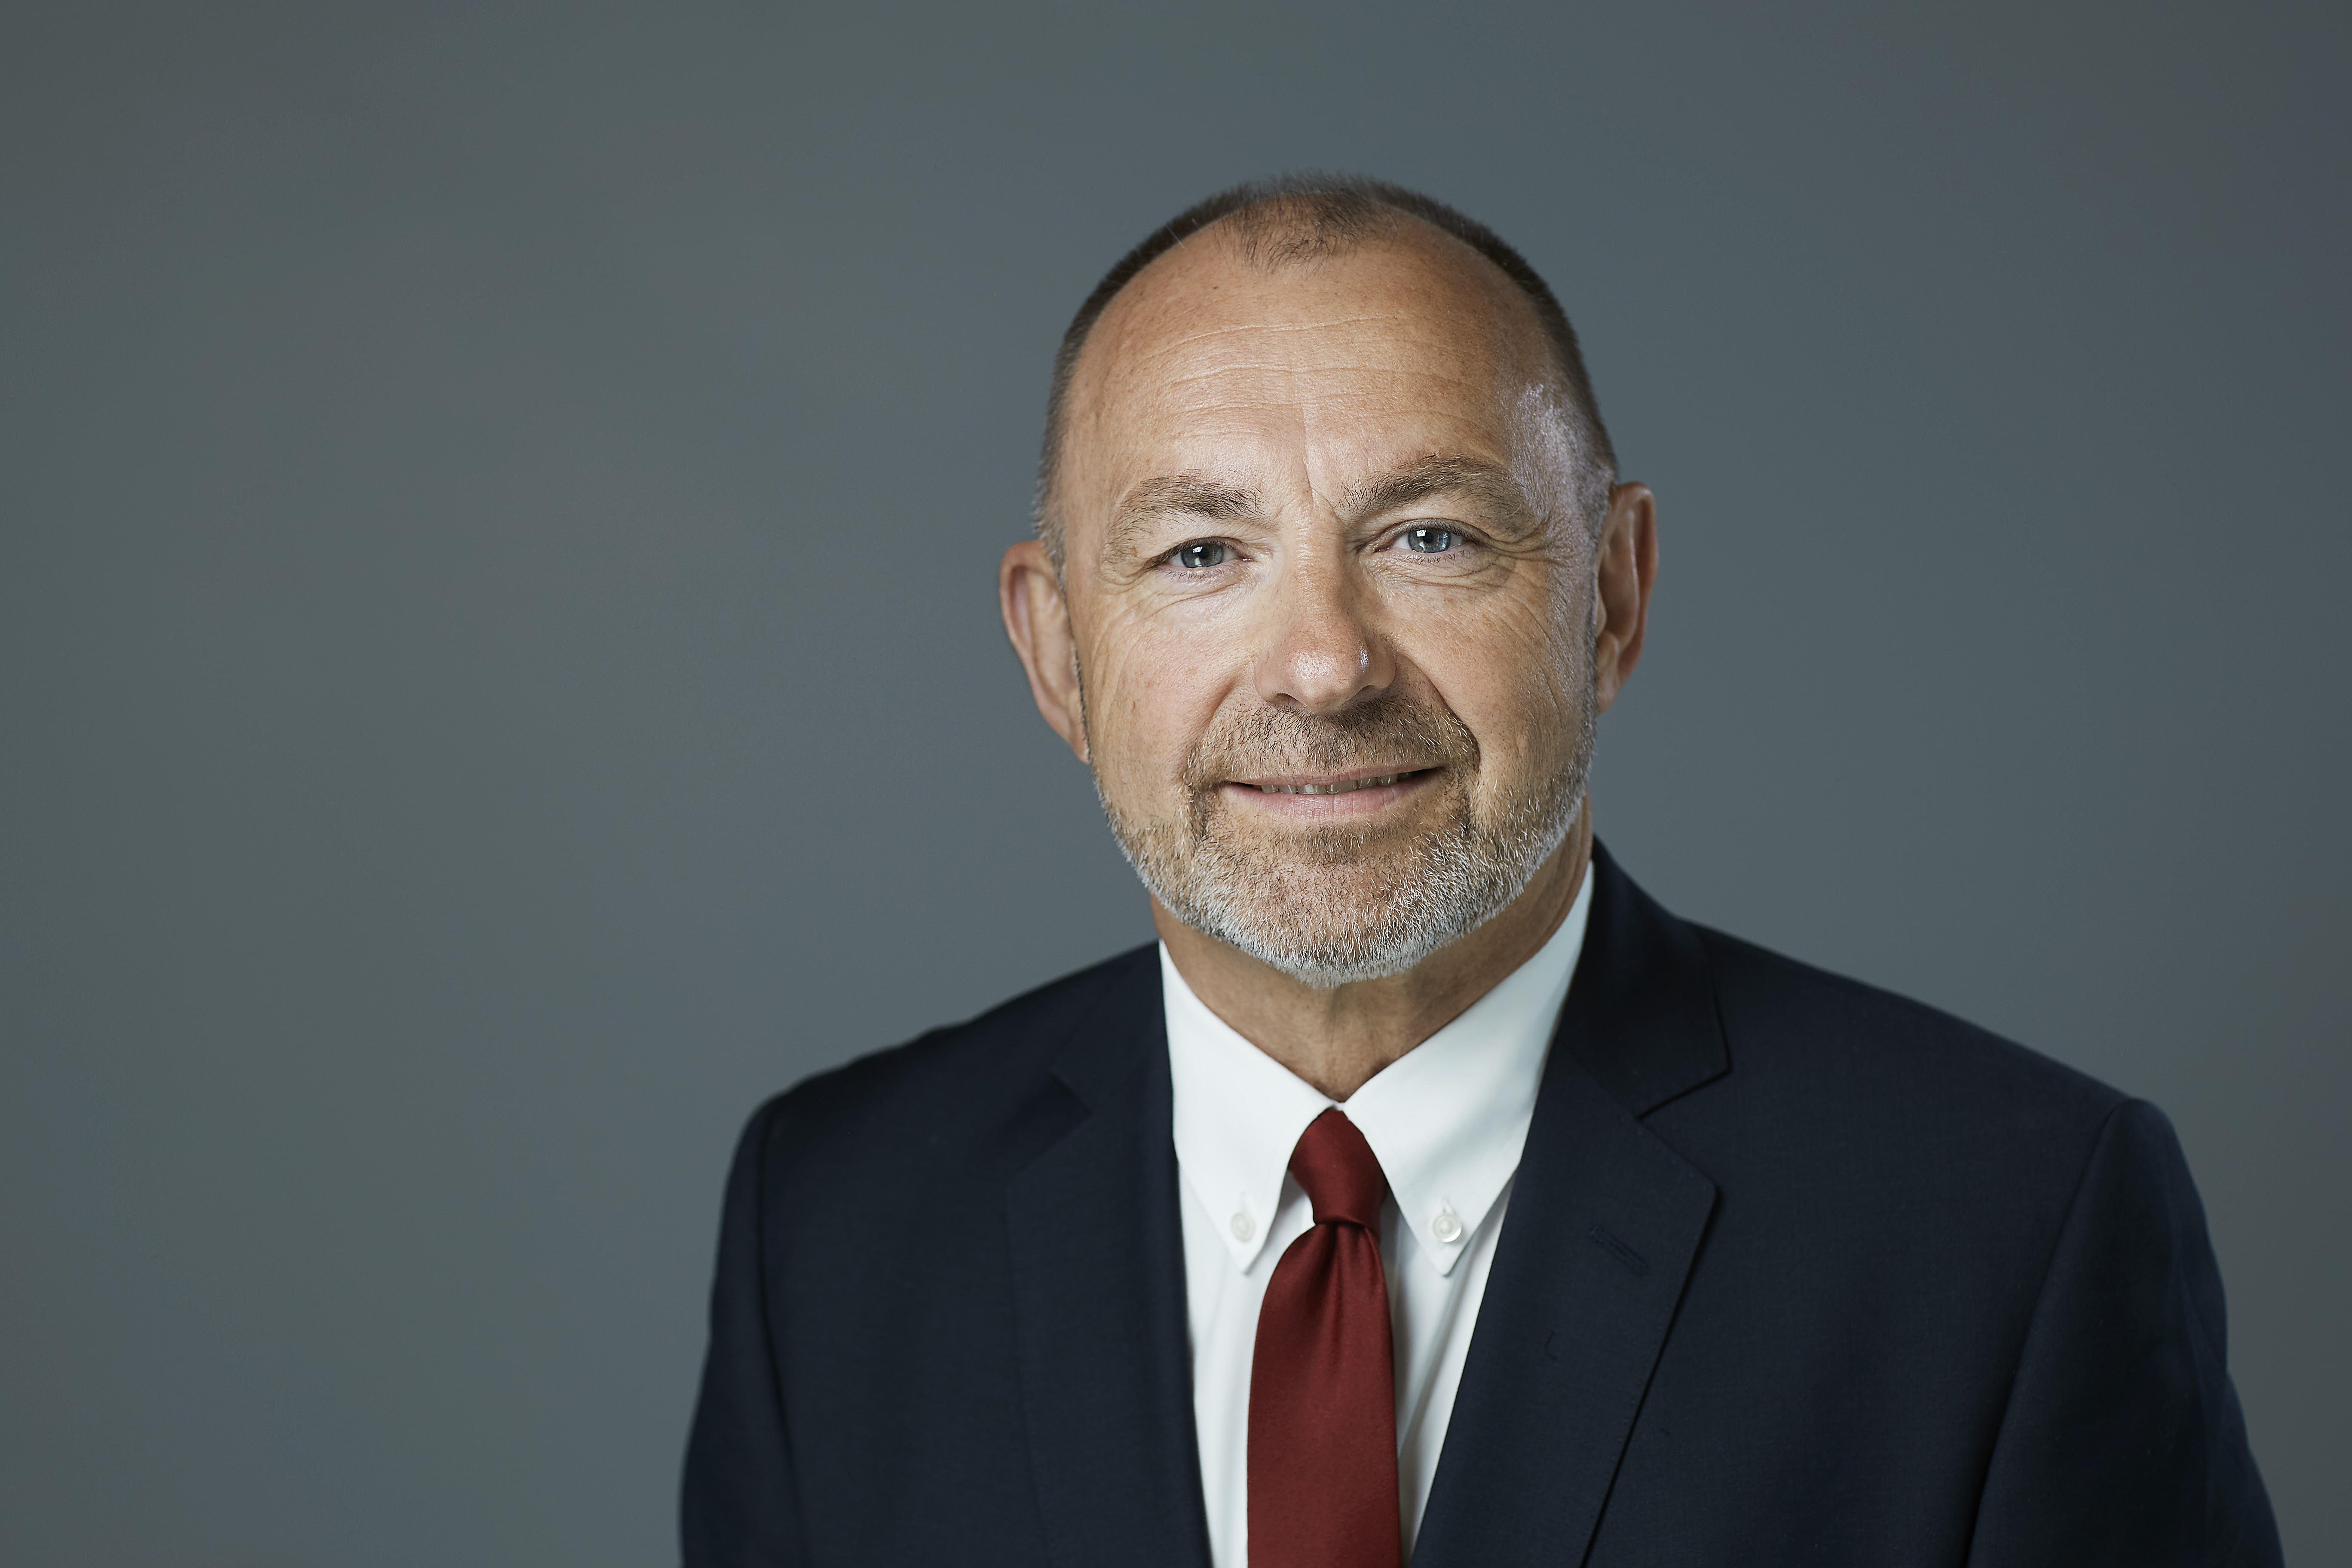 Mr. Jan Arve Haugan - CEO of Aker Energy